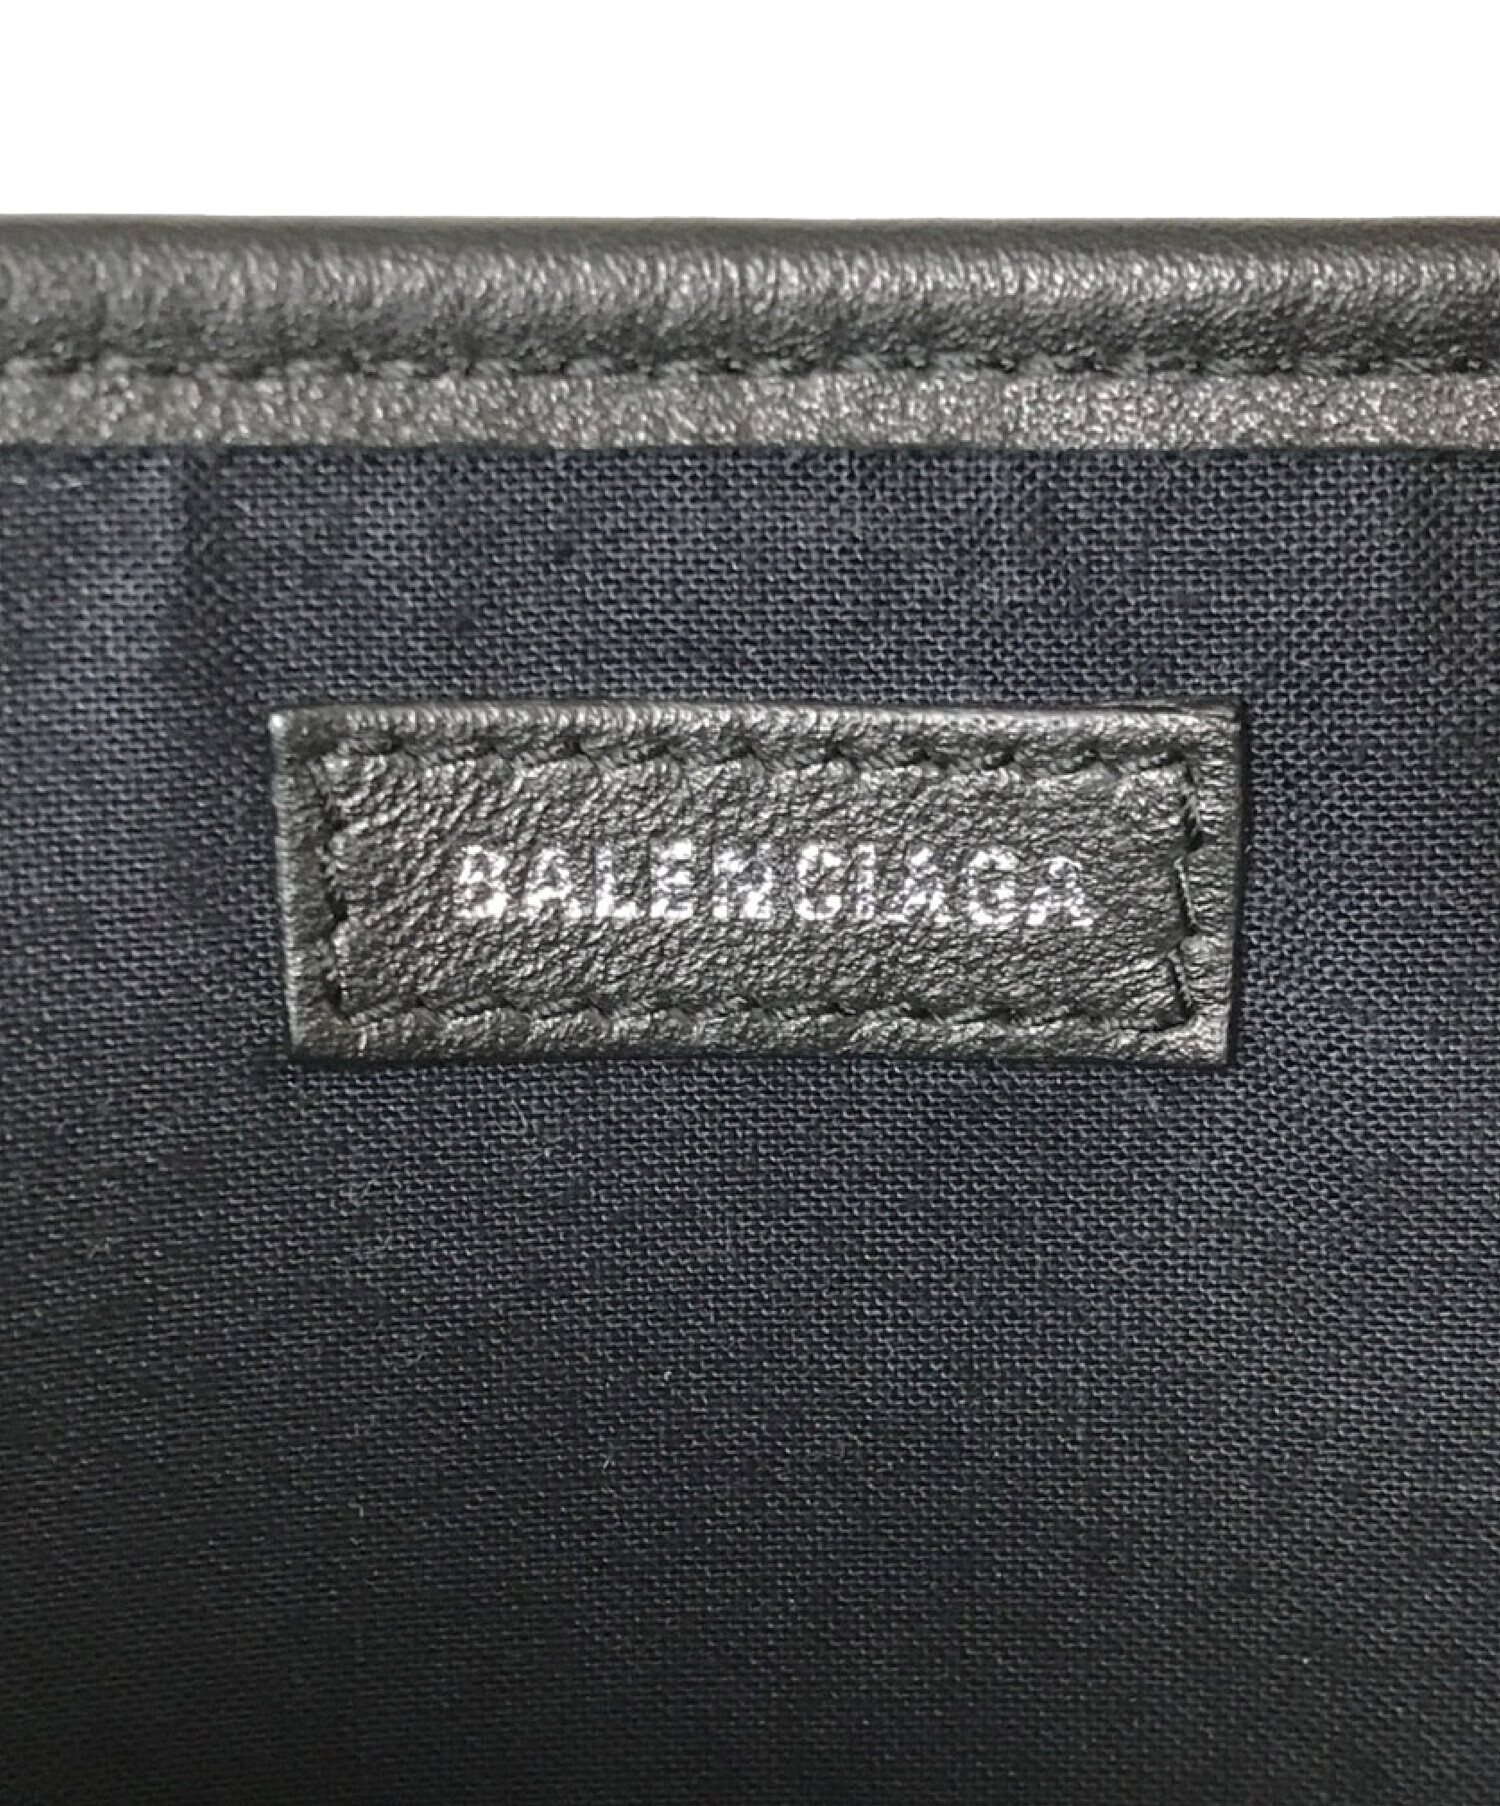 BALENCIAGA (バレンシアガ) パンチングロゴトートバッグ ブラック